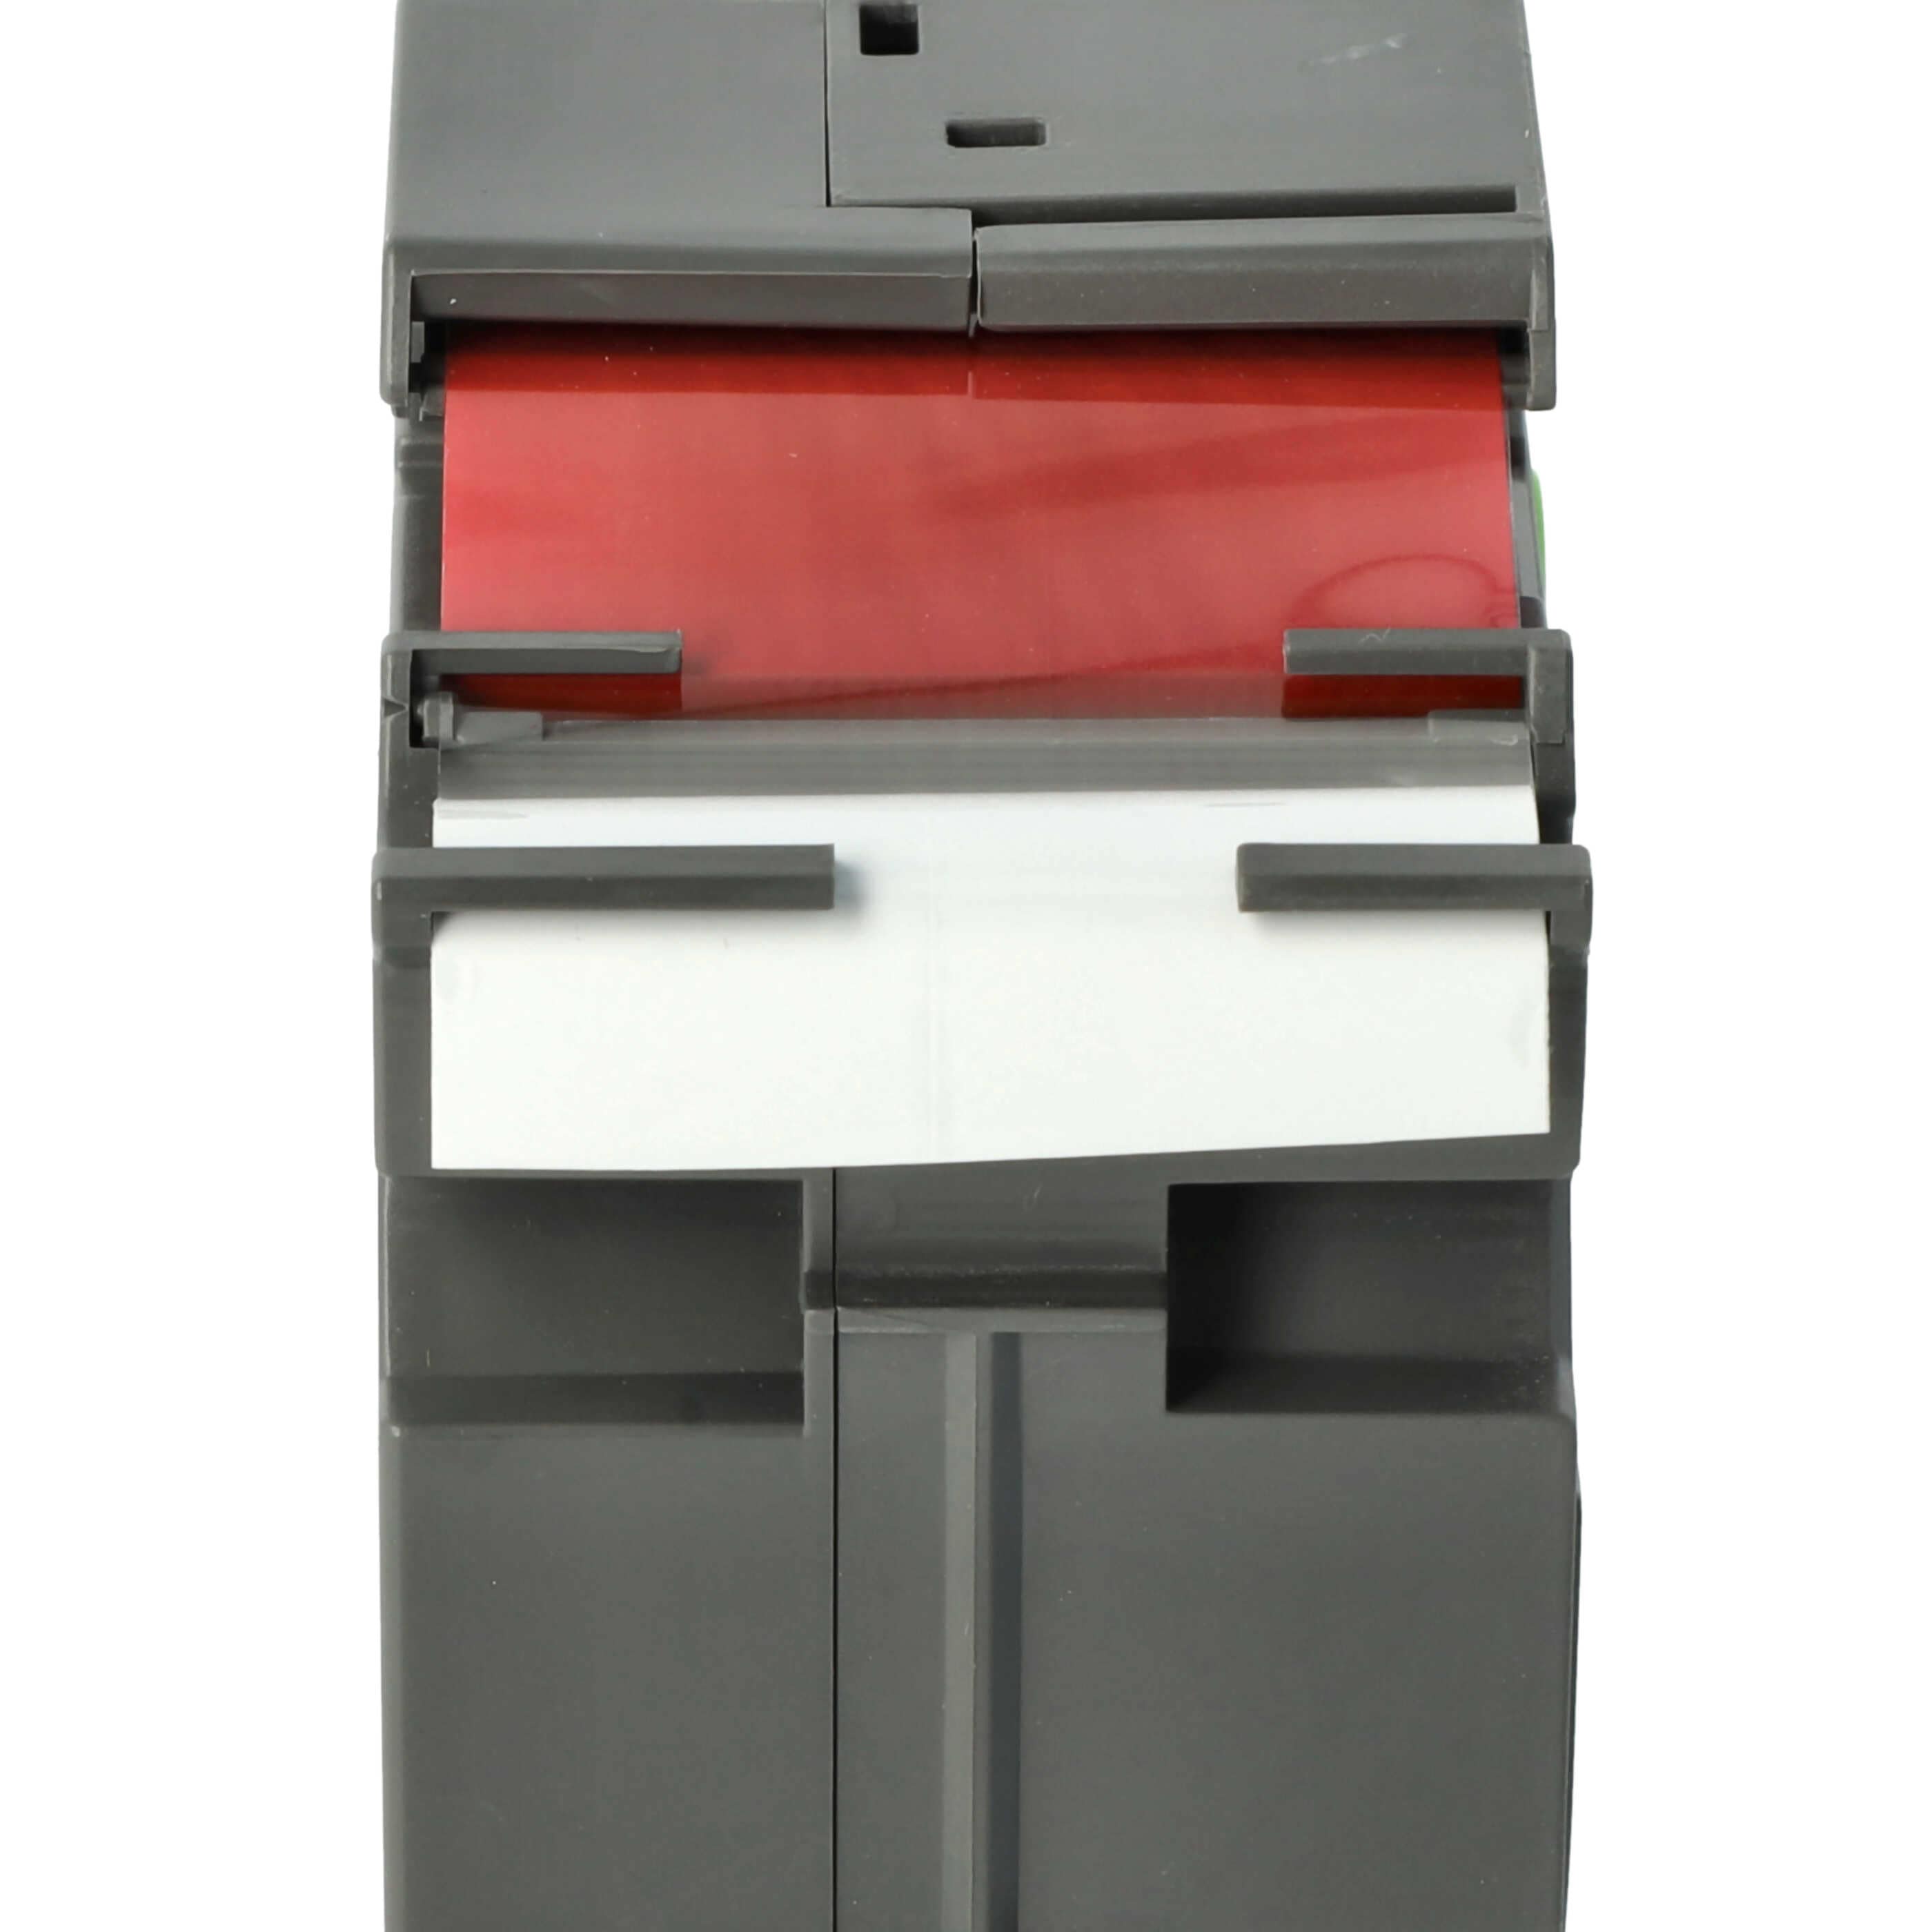 Cassetta nastro sostituisce Brother TZE-FX262 per etichettatrice Brother 36mm rosso su bianco, flessibile